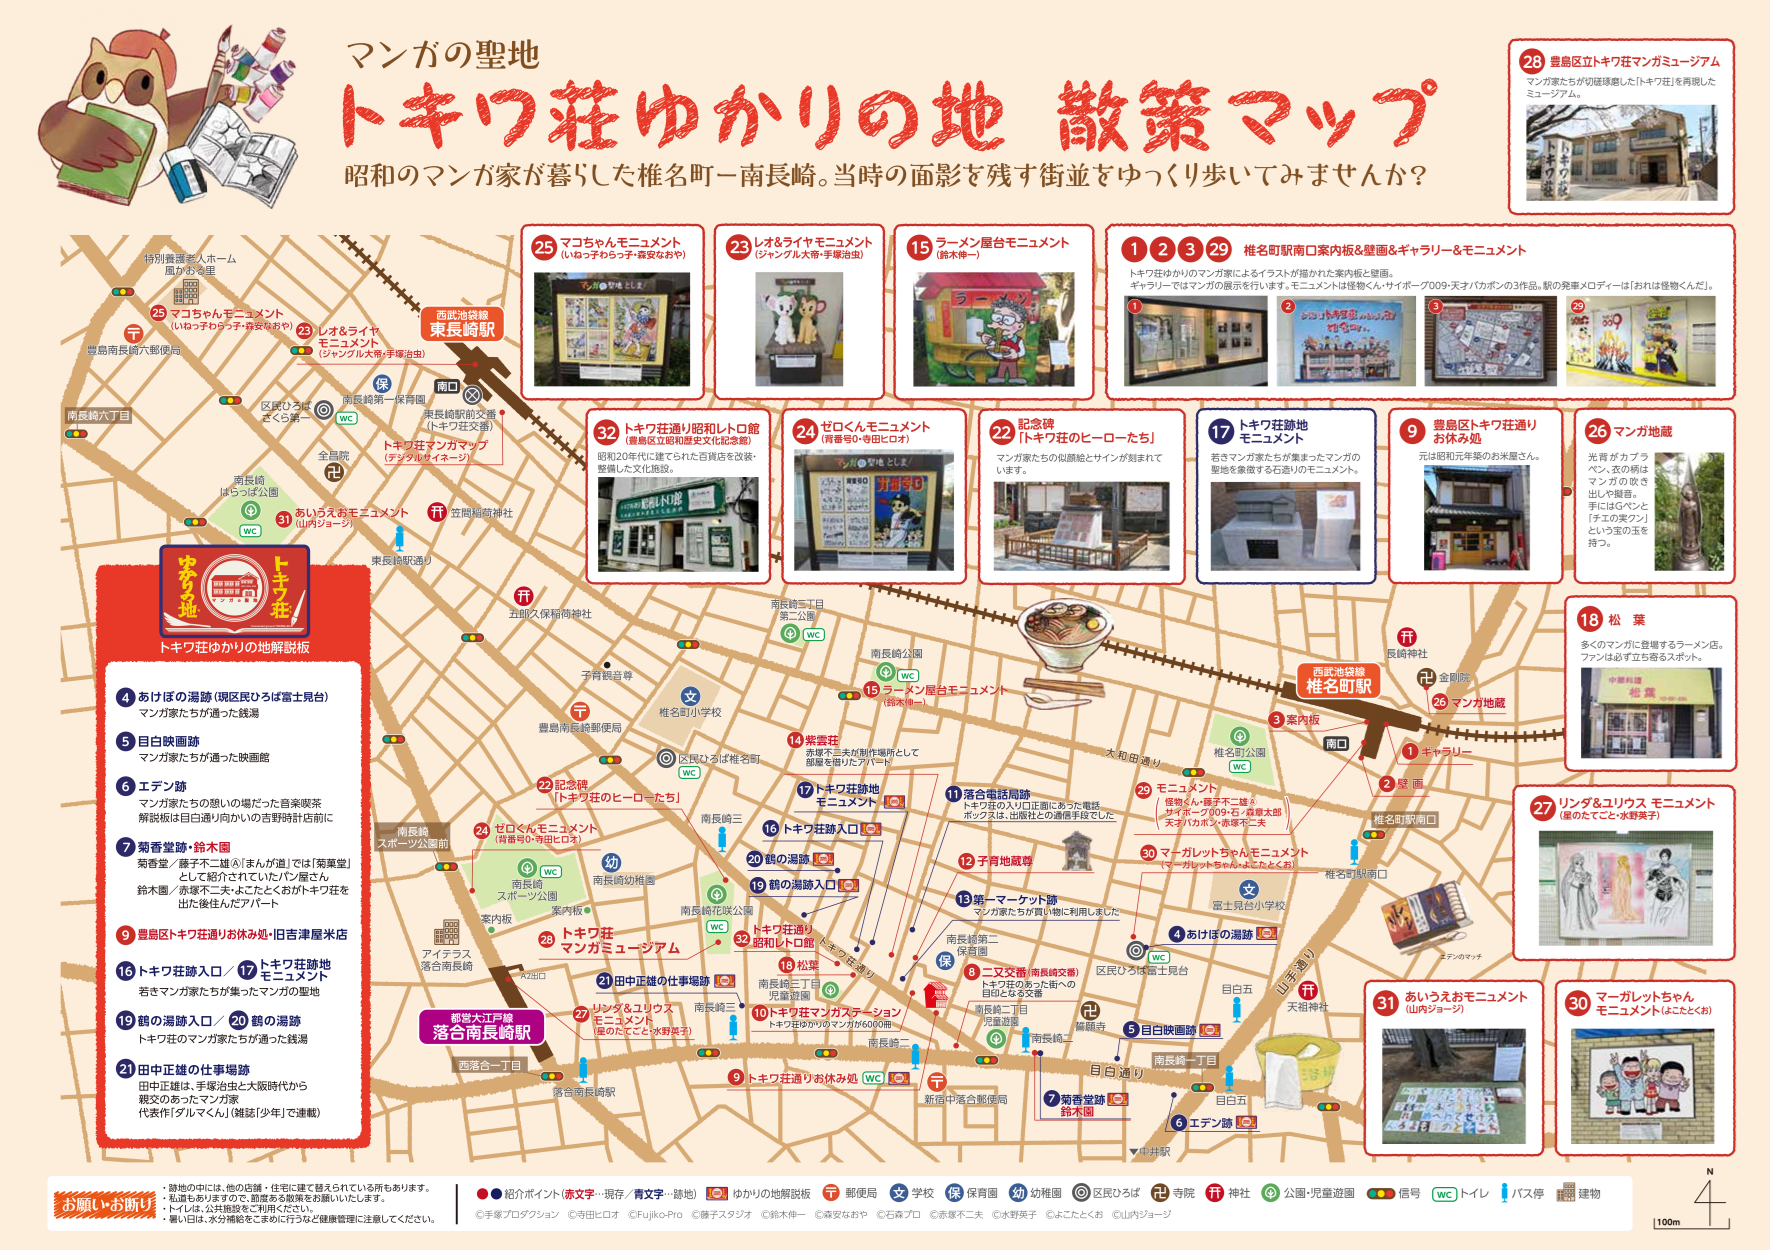 トキワ荘ゆかりの地 散策マップ